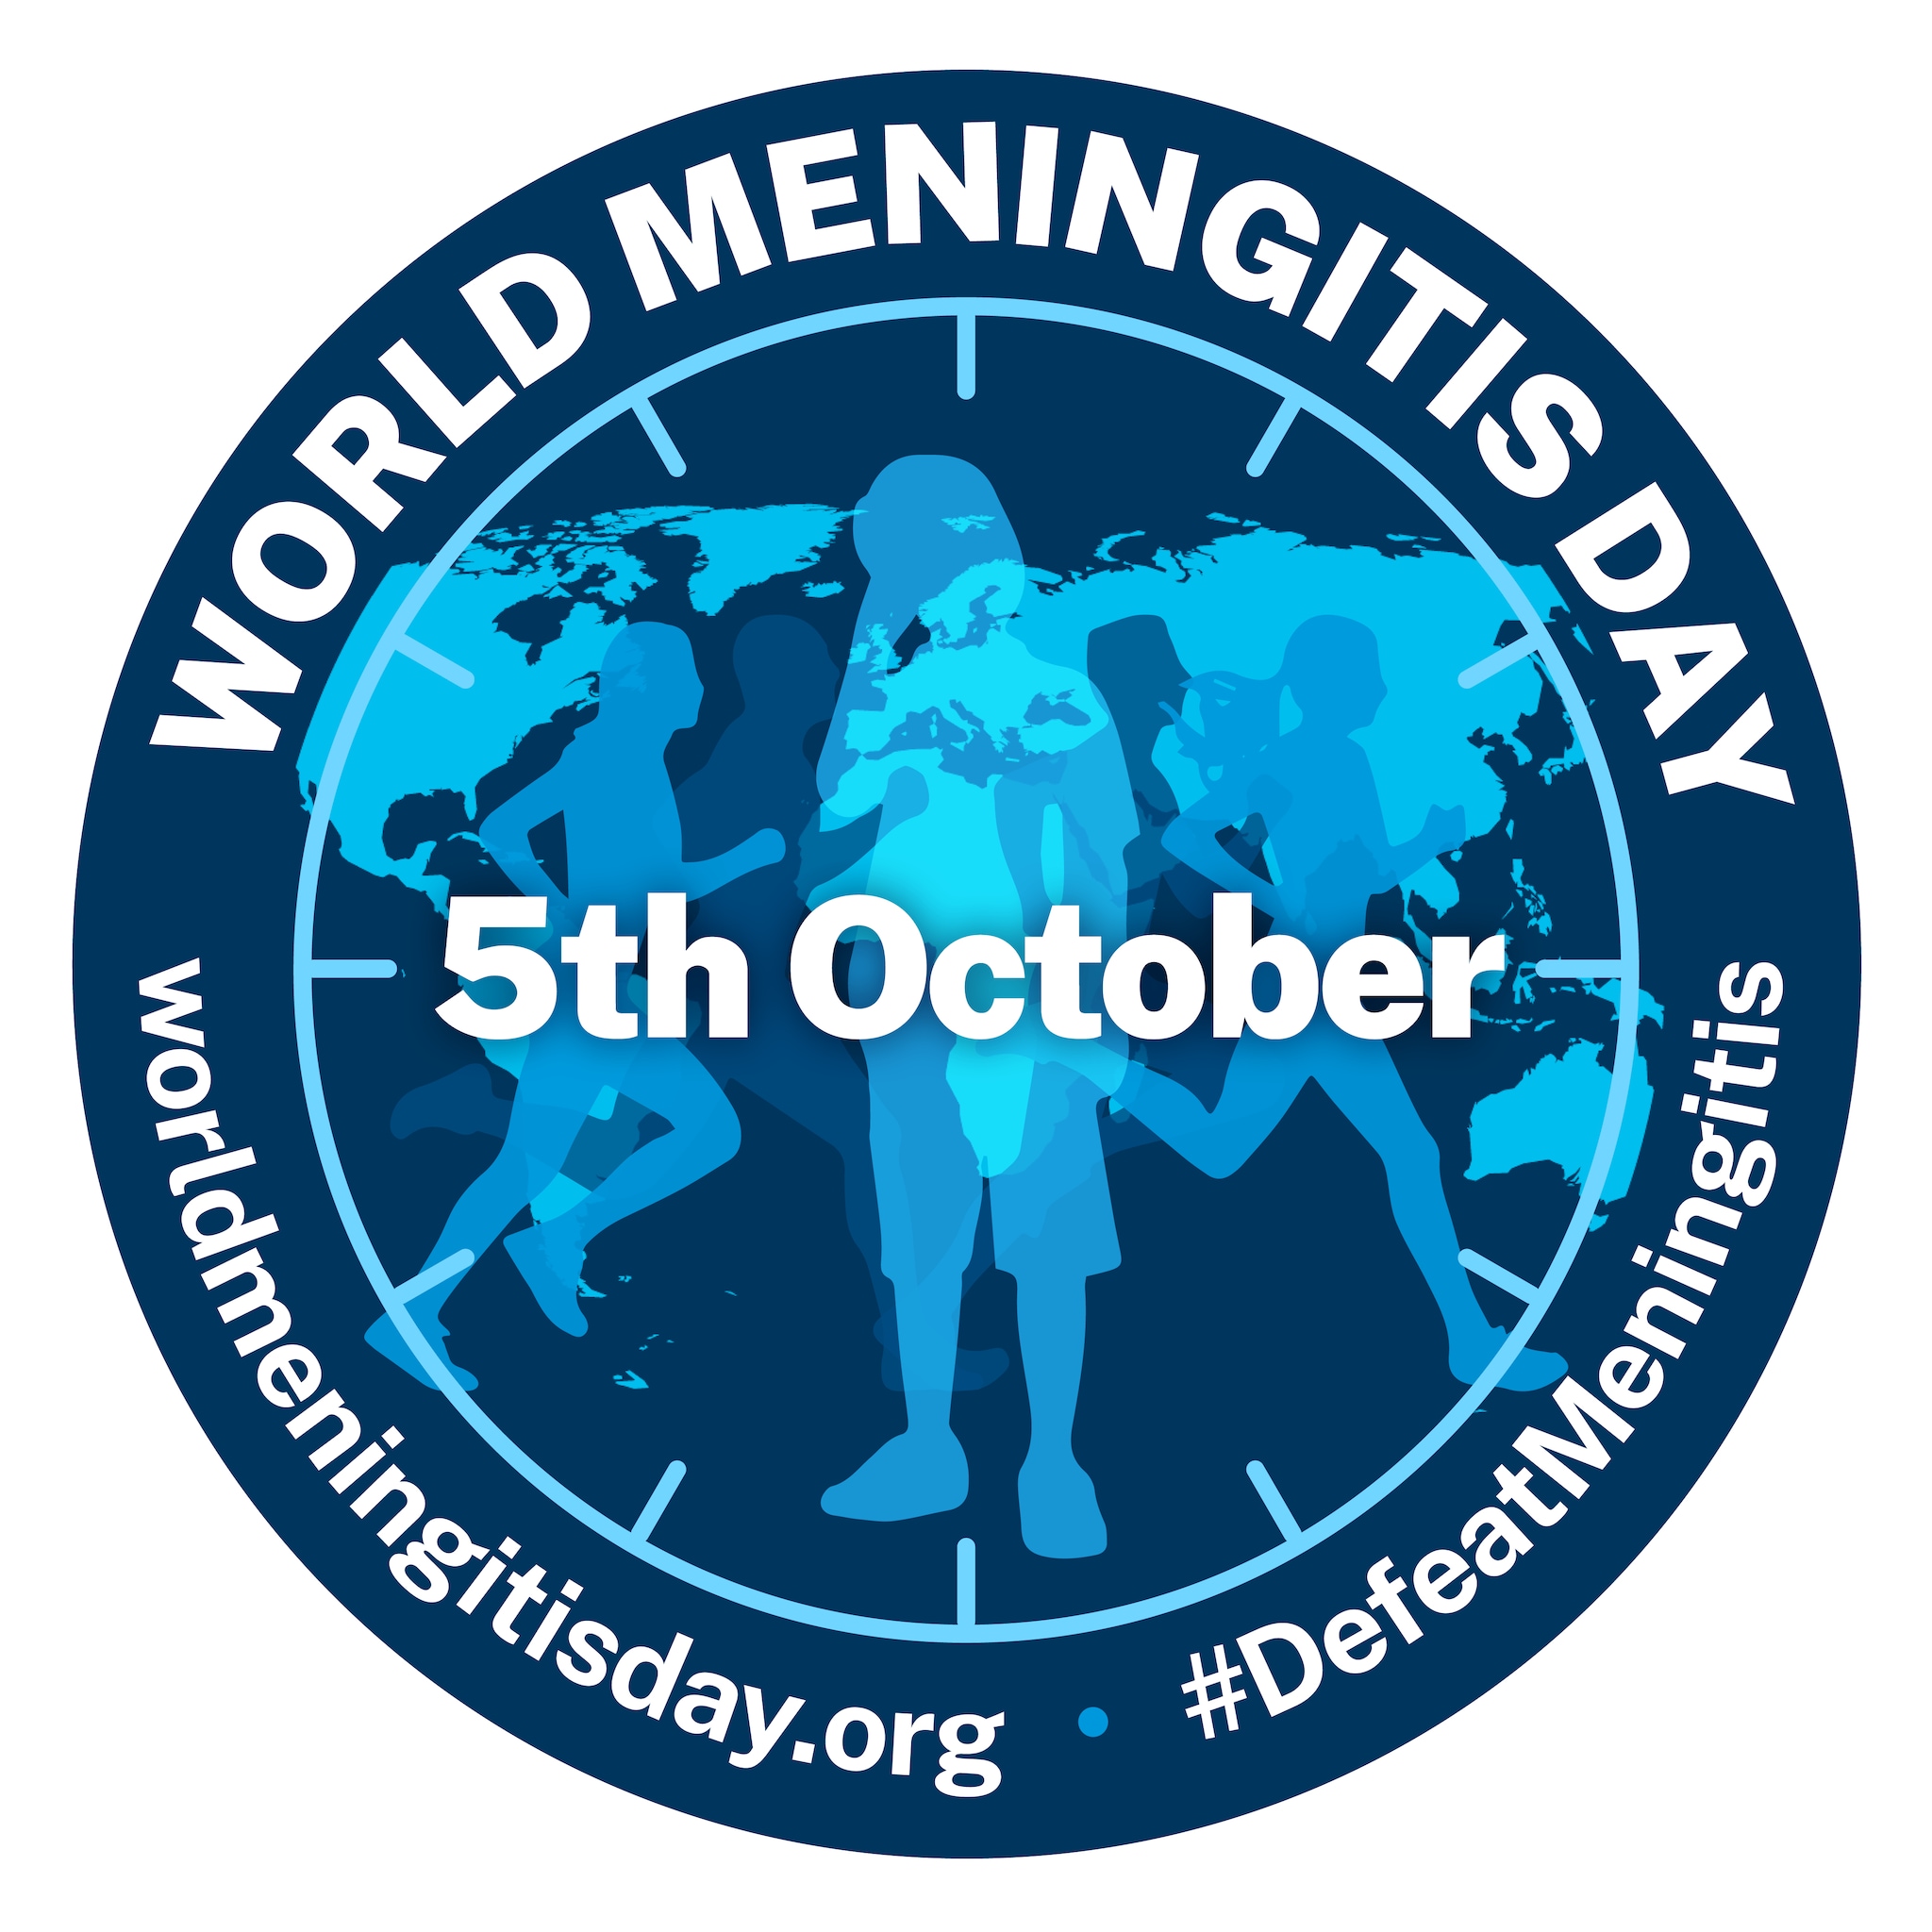 The World Meningitis Day logo.